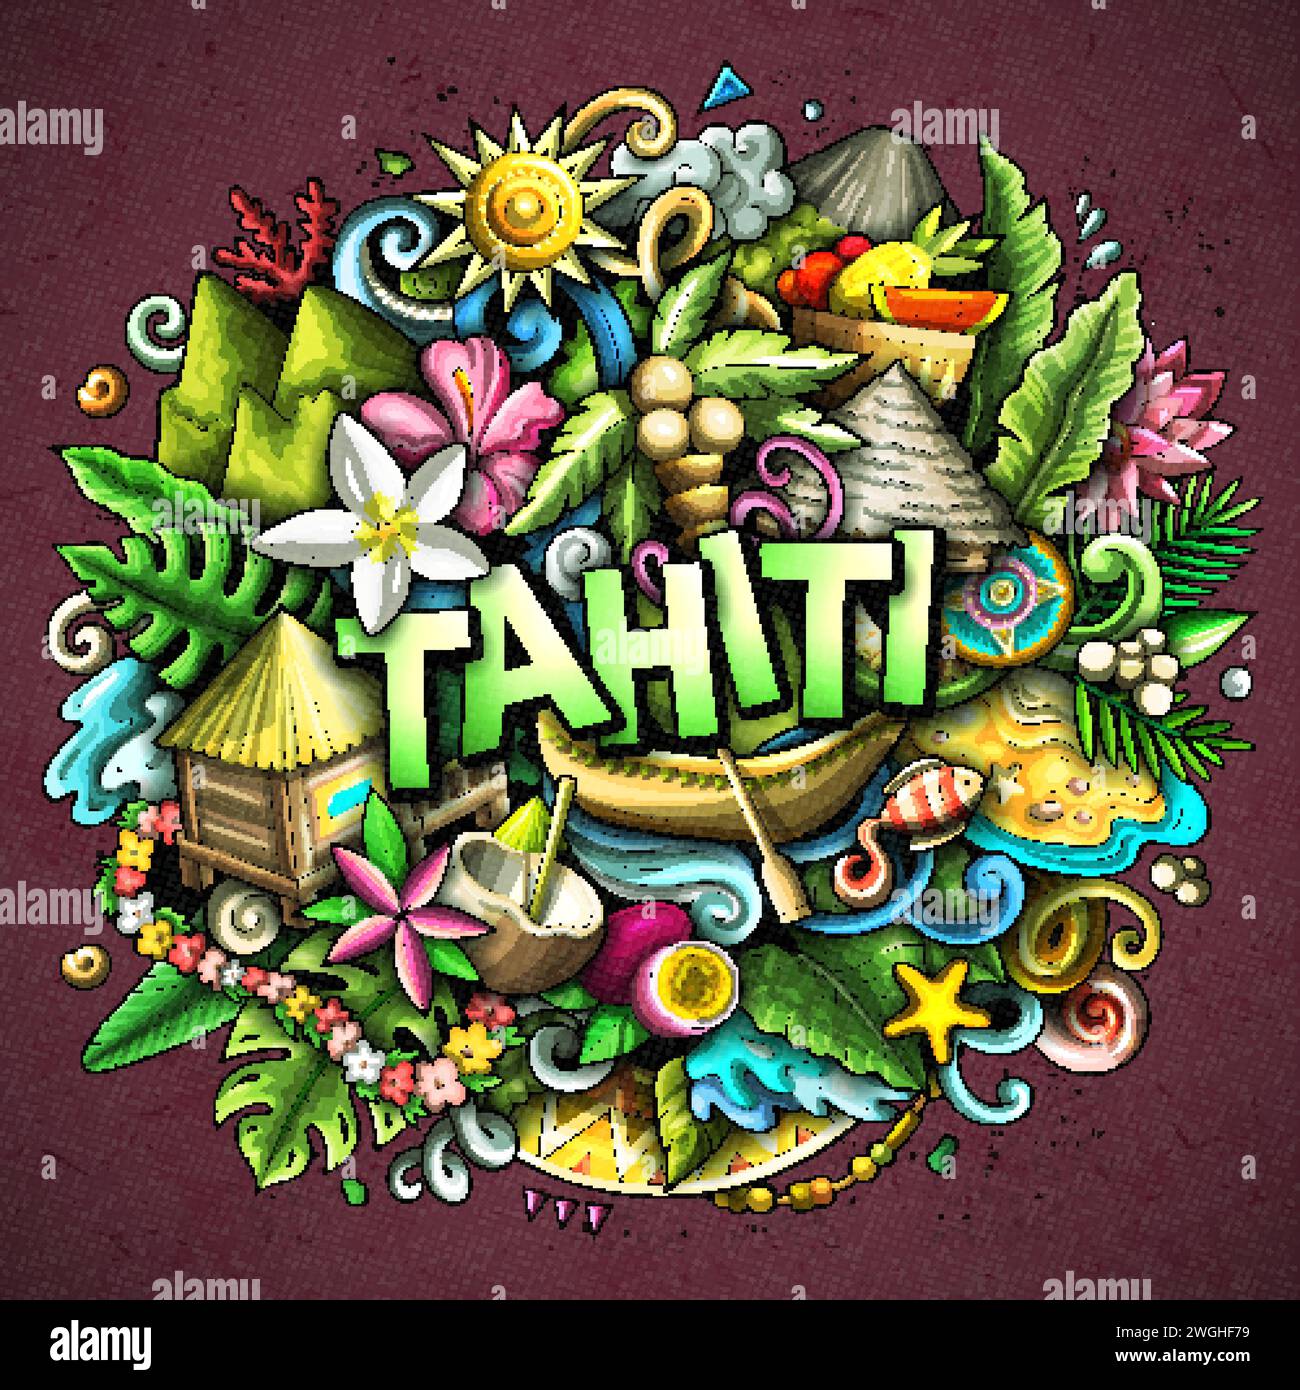 Tahiti dessin à la main dessin animé illustration doodle. Fond de vecteur amusant créatif. Texte manuscrit avec éléments et objets. Composition colorée Illustration de Vecteur